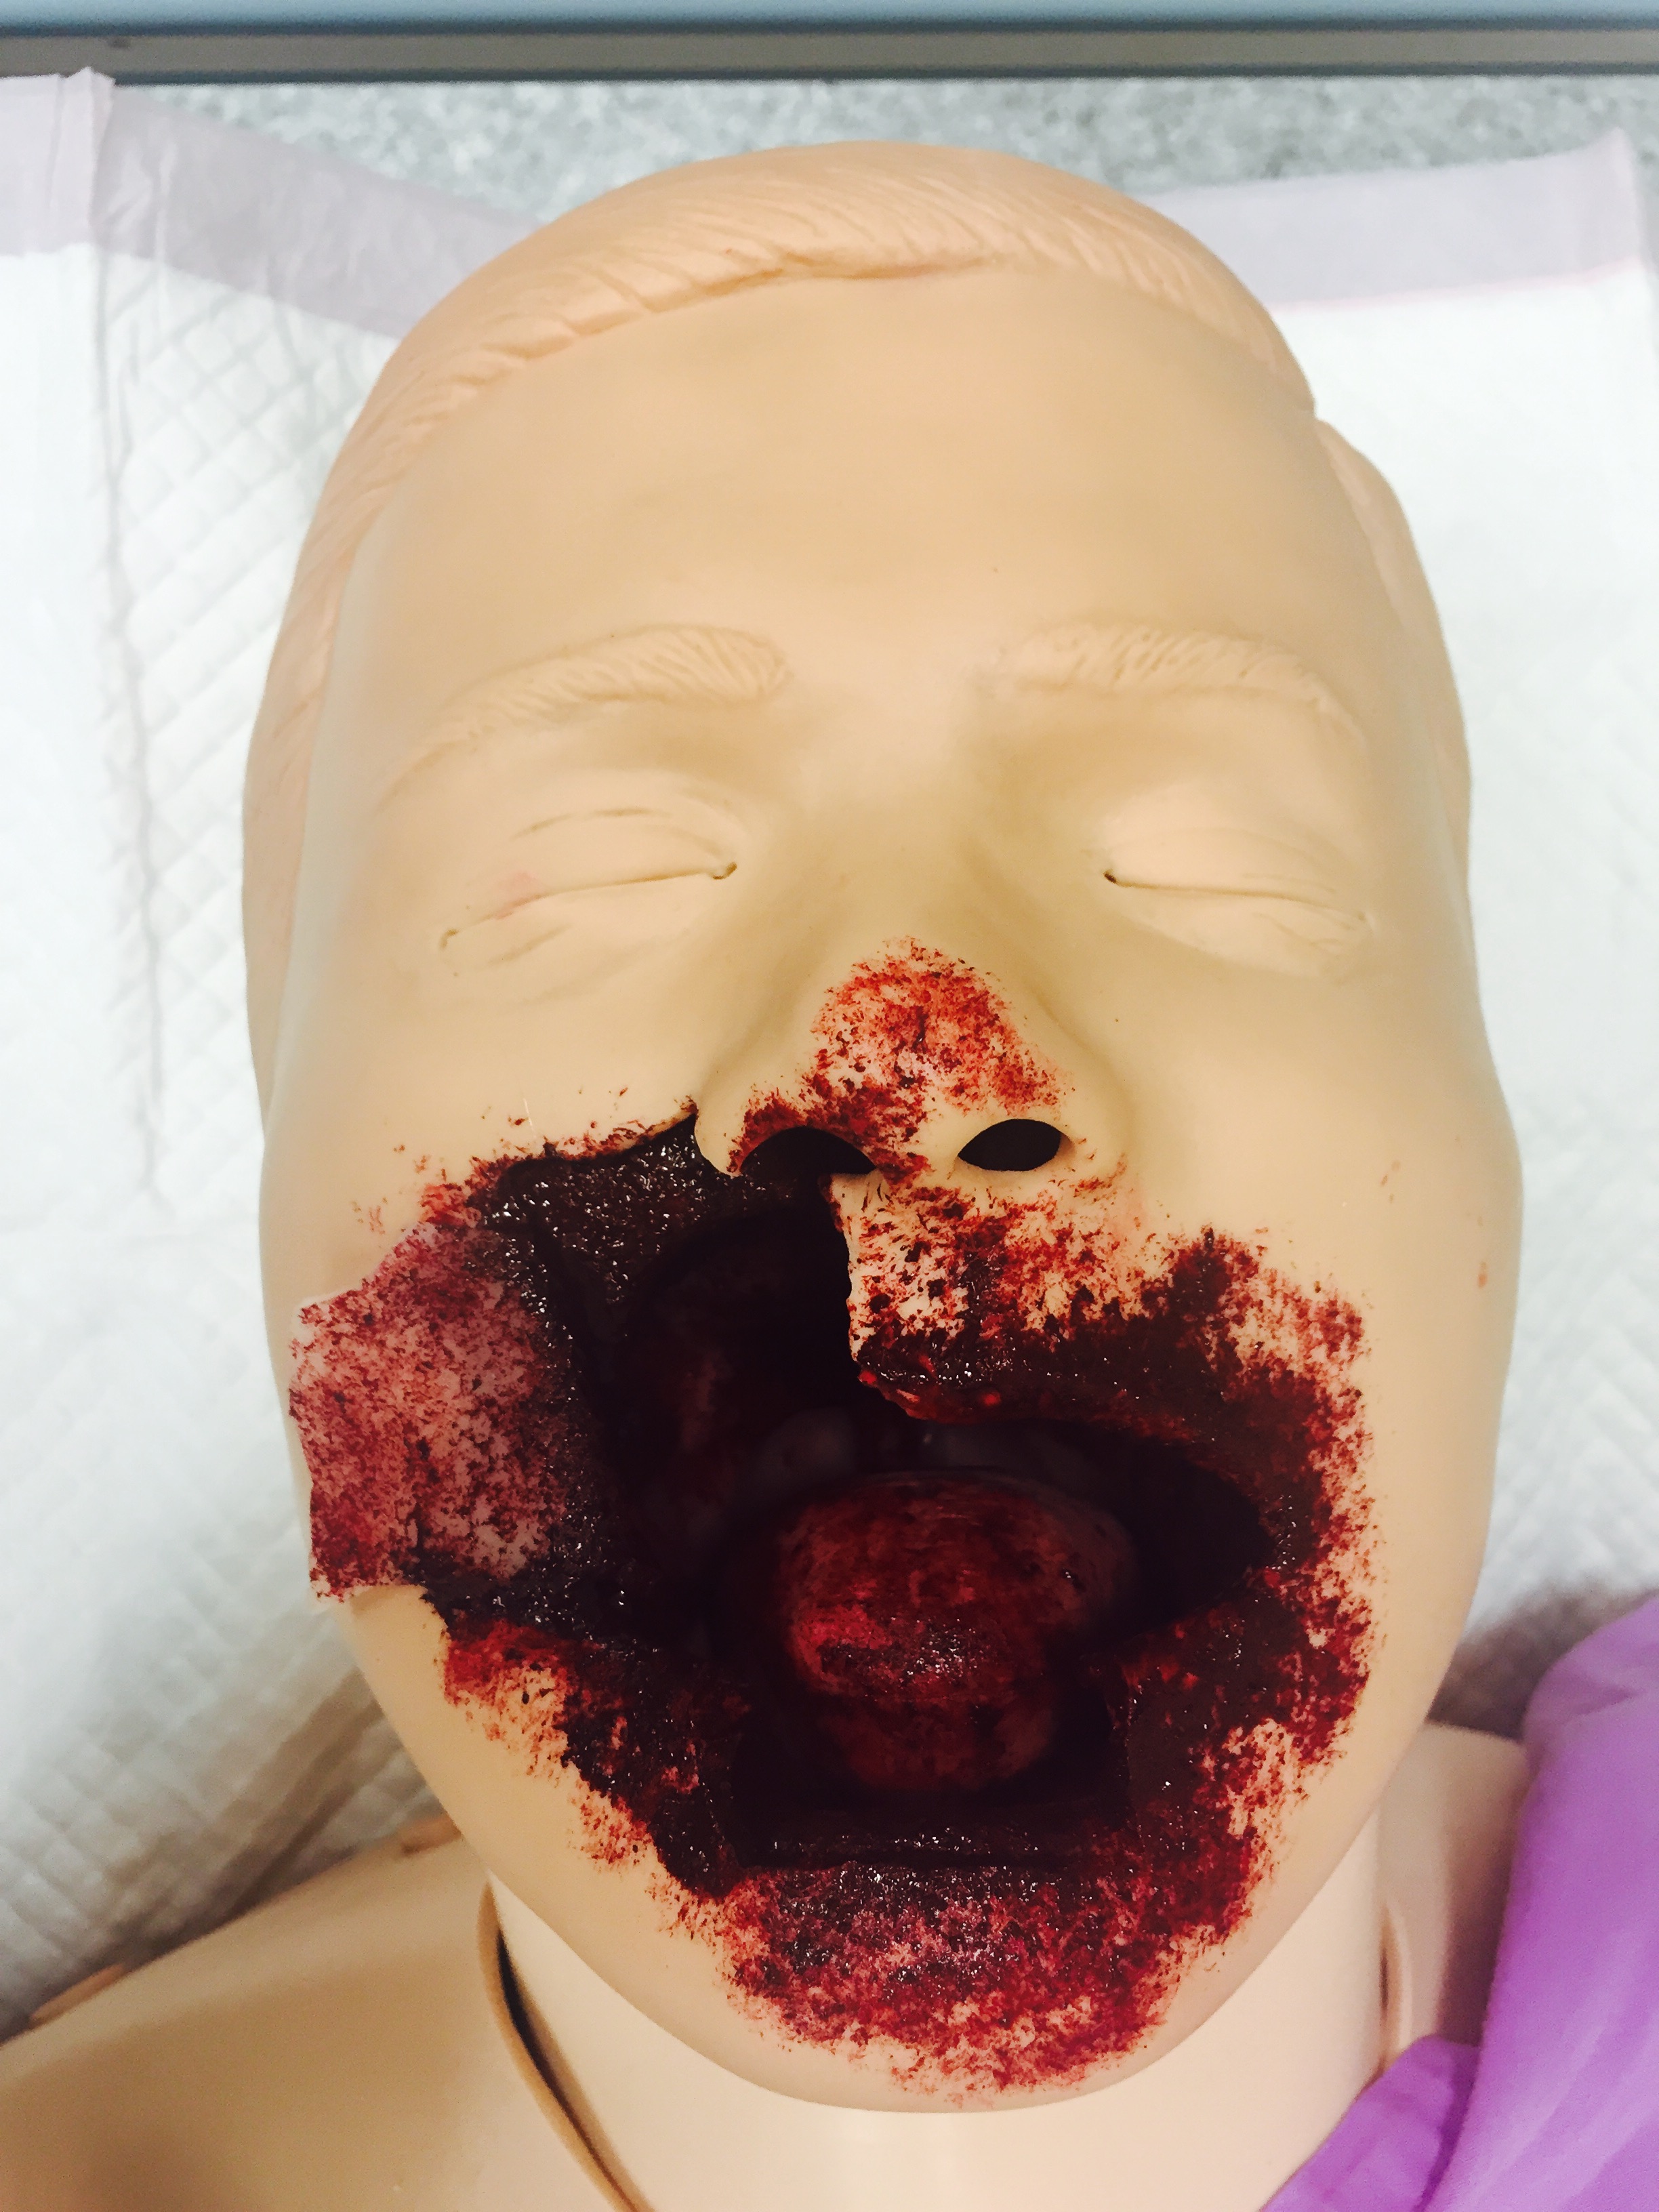 Short report publication – facial gunshot wound moulage - CSDS Blog